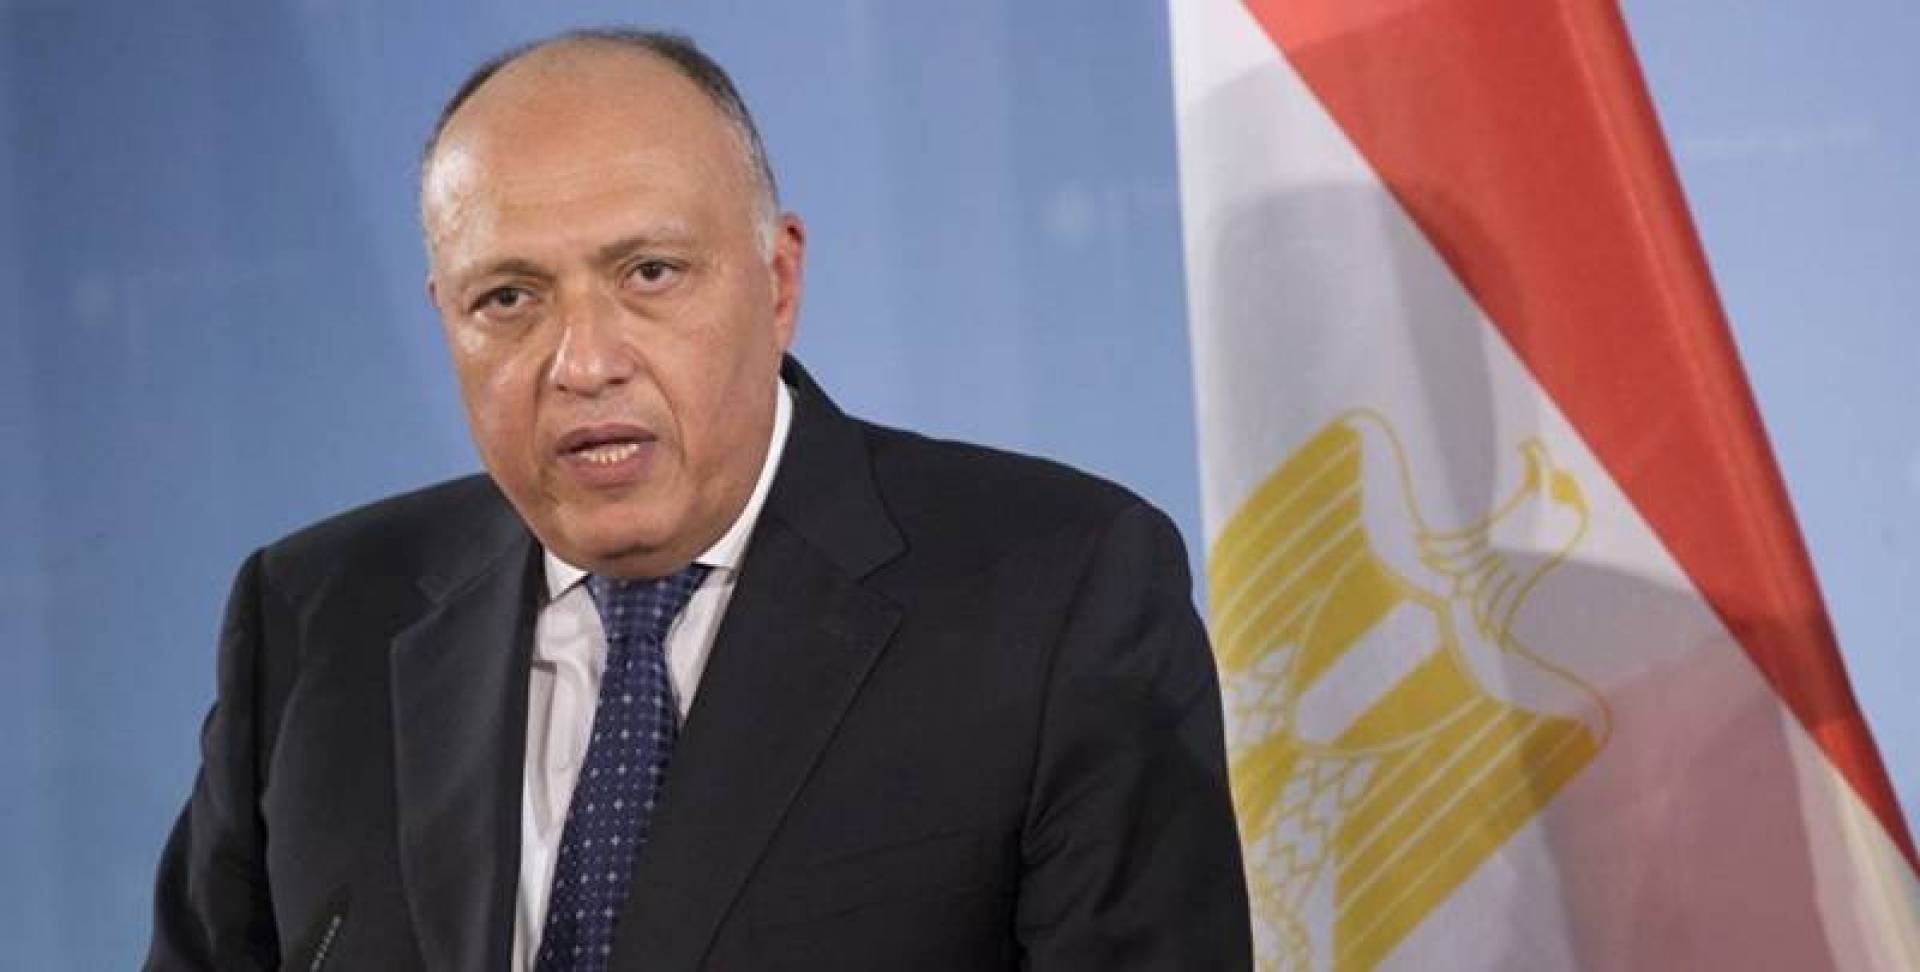 عاجل "رسمياً" مصر تحيل ملف سد النهضة إلى مجلس الأمن لتجنب التوتر وحفظ الأمن والسلم الدوليين 1